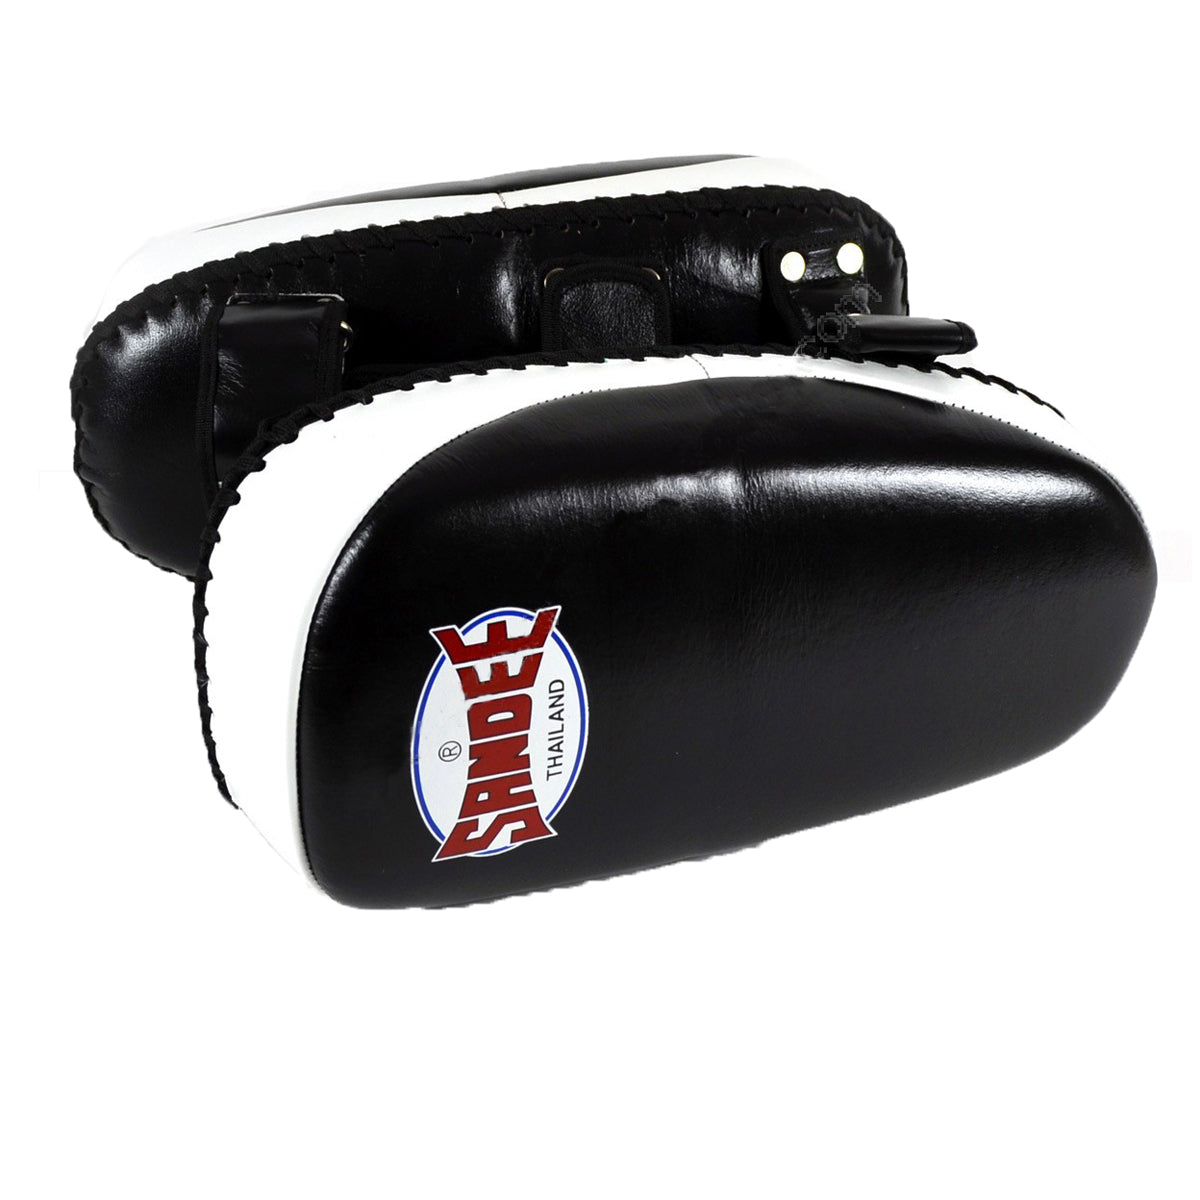 Sandee Leather Curved Muay Thai Kick Pads - Black/White Sandee